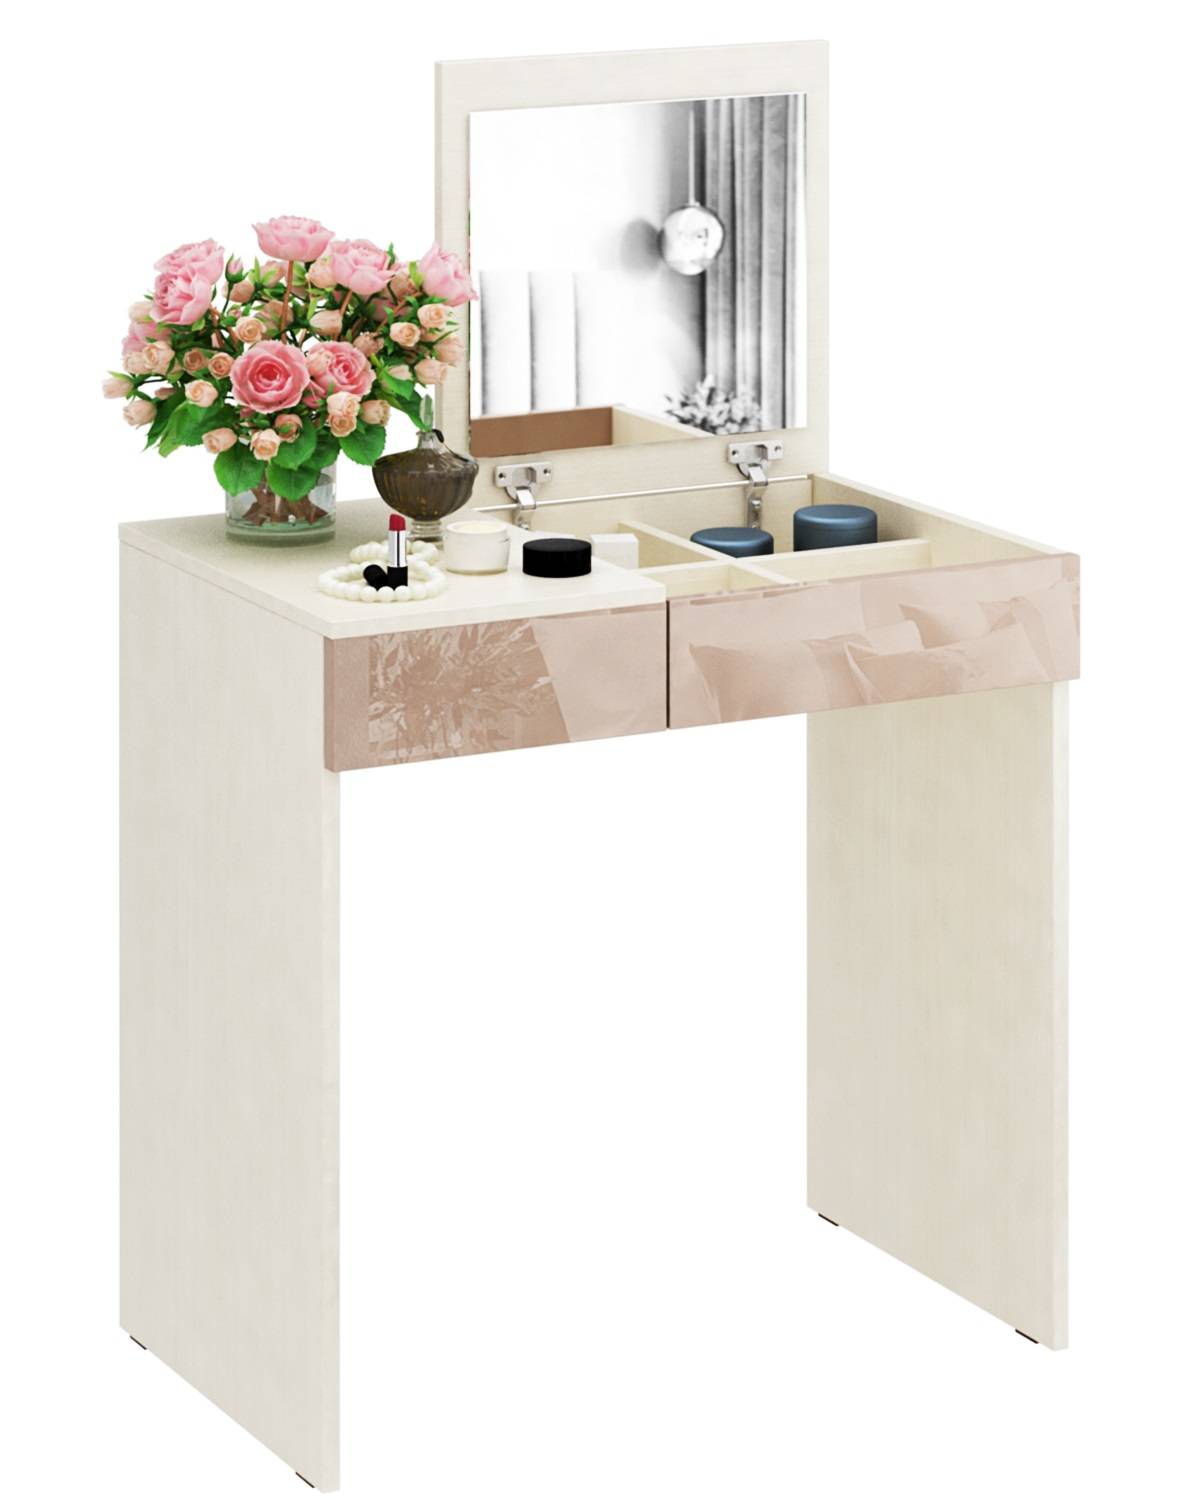 Белый туалетный столик с зеркалом: модели с овальным зеркалом в цвете белый глянец, узкие столы с позолотой